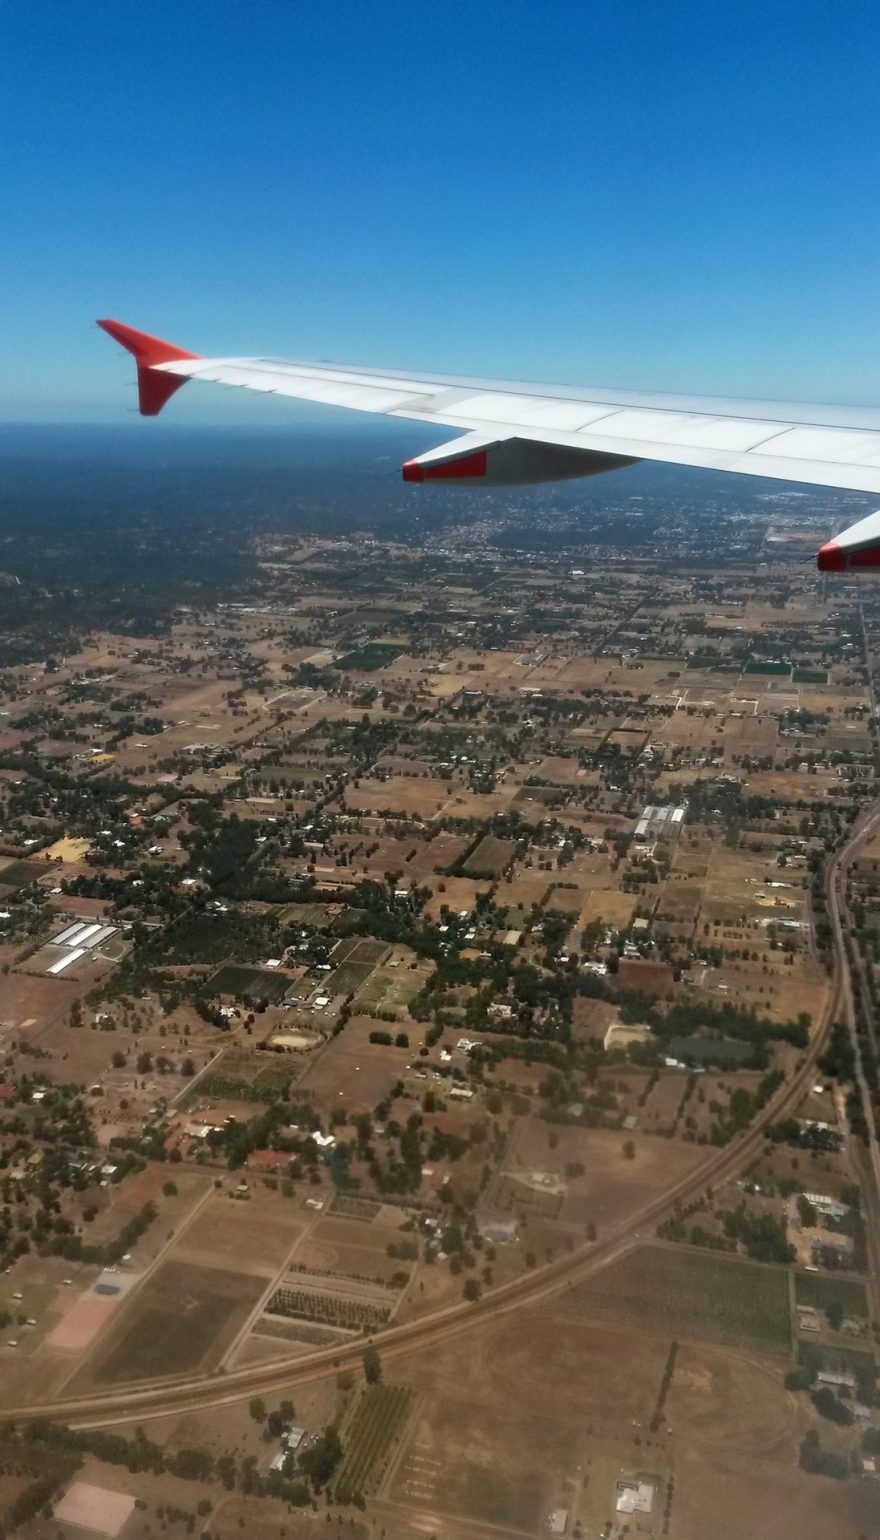 Austrálie po příletu vypadá jako terakotová placka, Perth, Austrálie